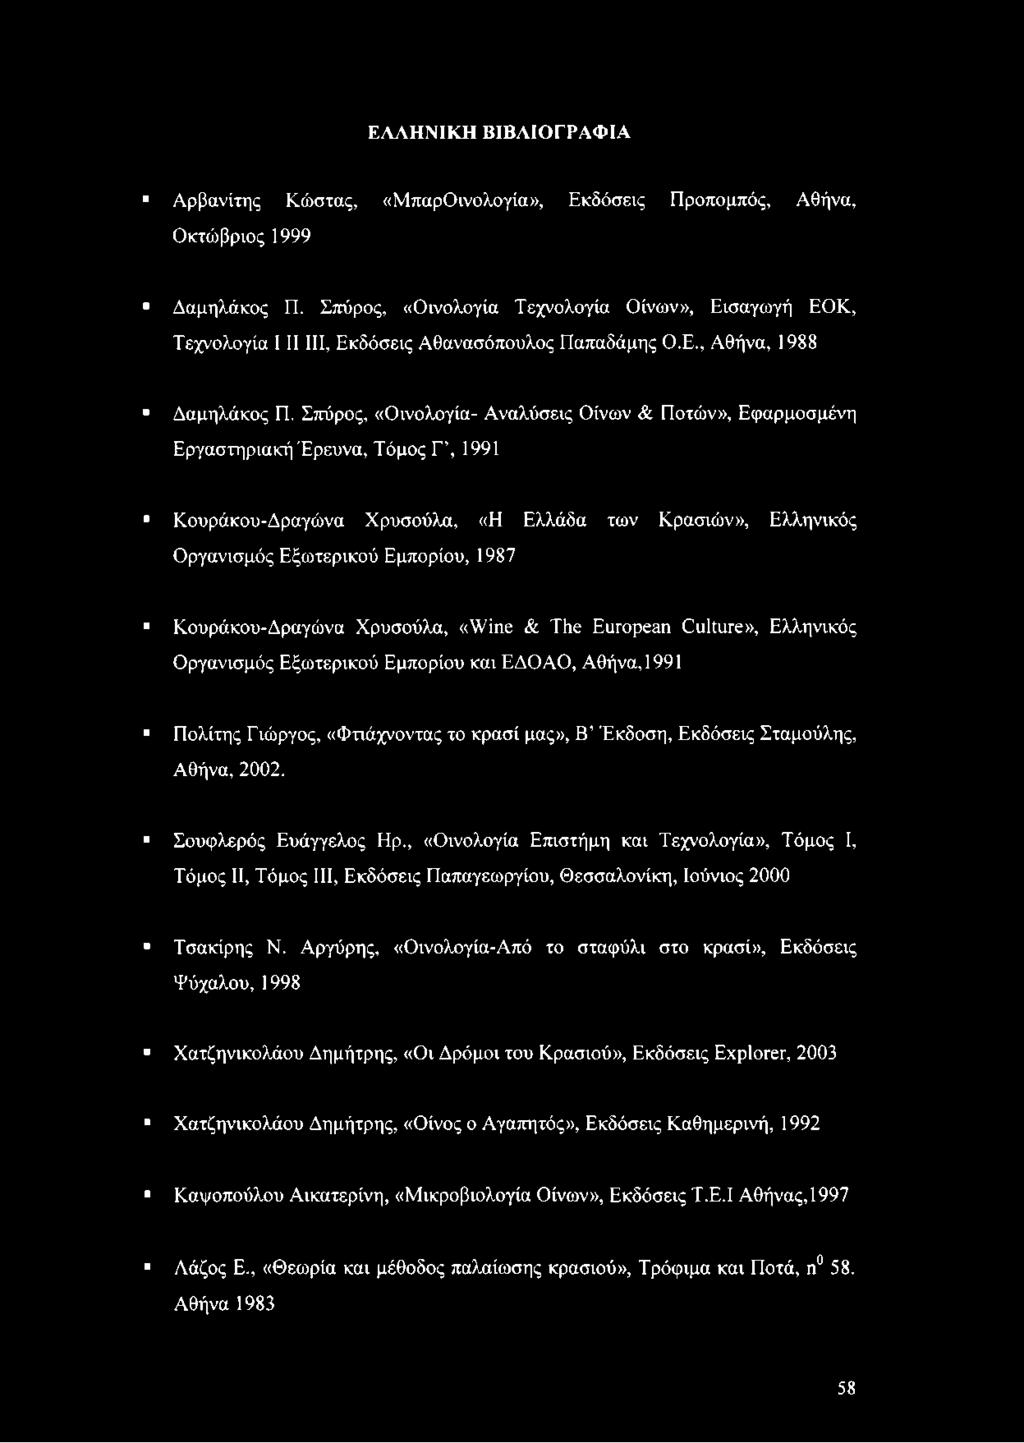 Σπόρος, «Οινολογία- Αναλύσεις Οίνων & Ποτών», Εφαρμοσμένη Εργαστηριακή Έρευνα, Τόμος Τ, 1991 Κουράκου-Δραγώνα Χρυσούλα, «Η Ελλάδα των Κρασιών», Ελληνικός Οργανισμός Εξωτερικού Εμπορίου, 1987